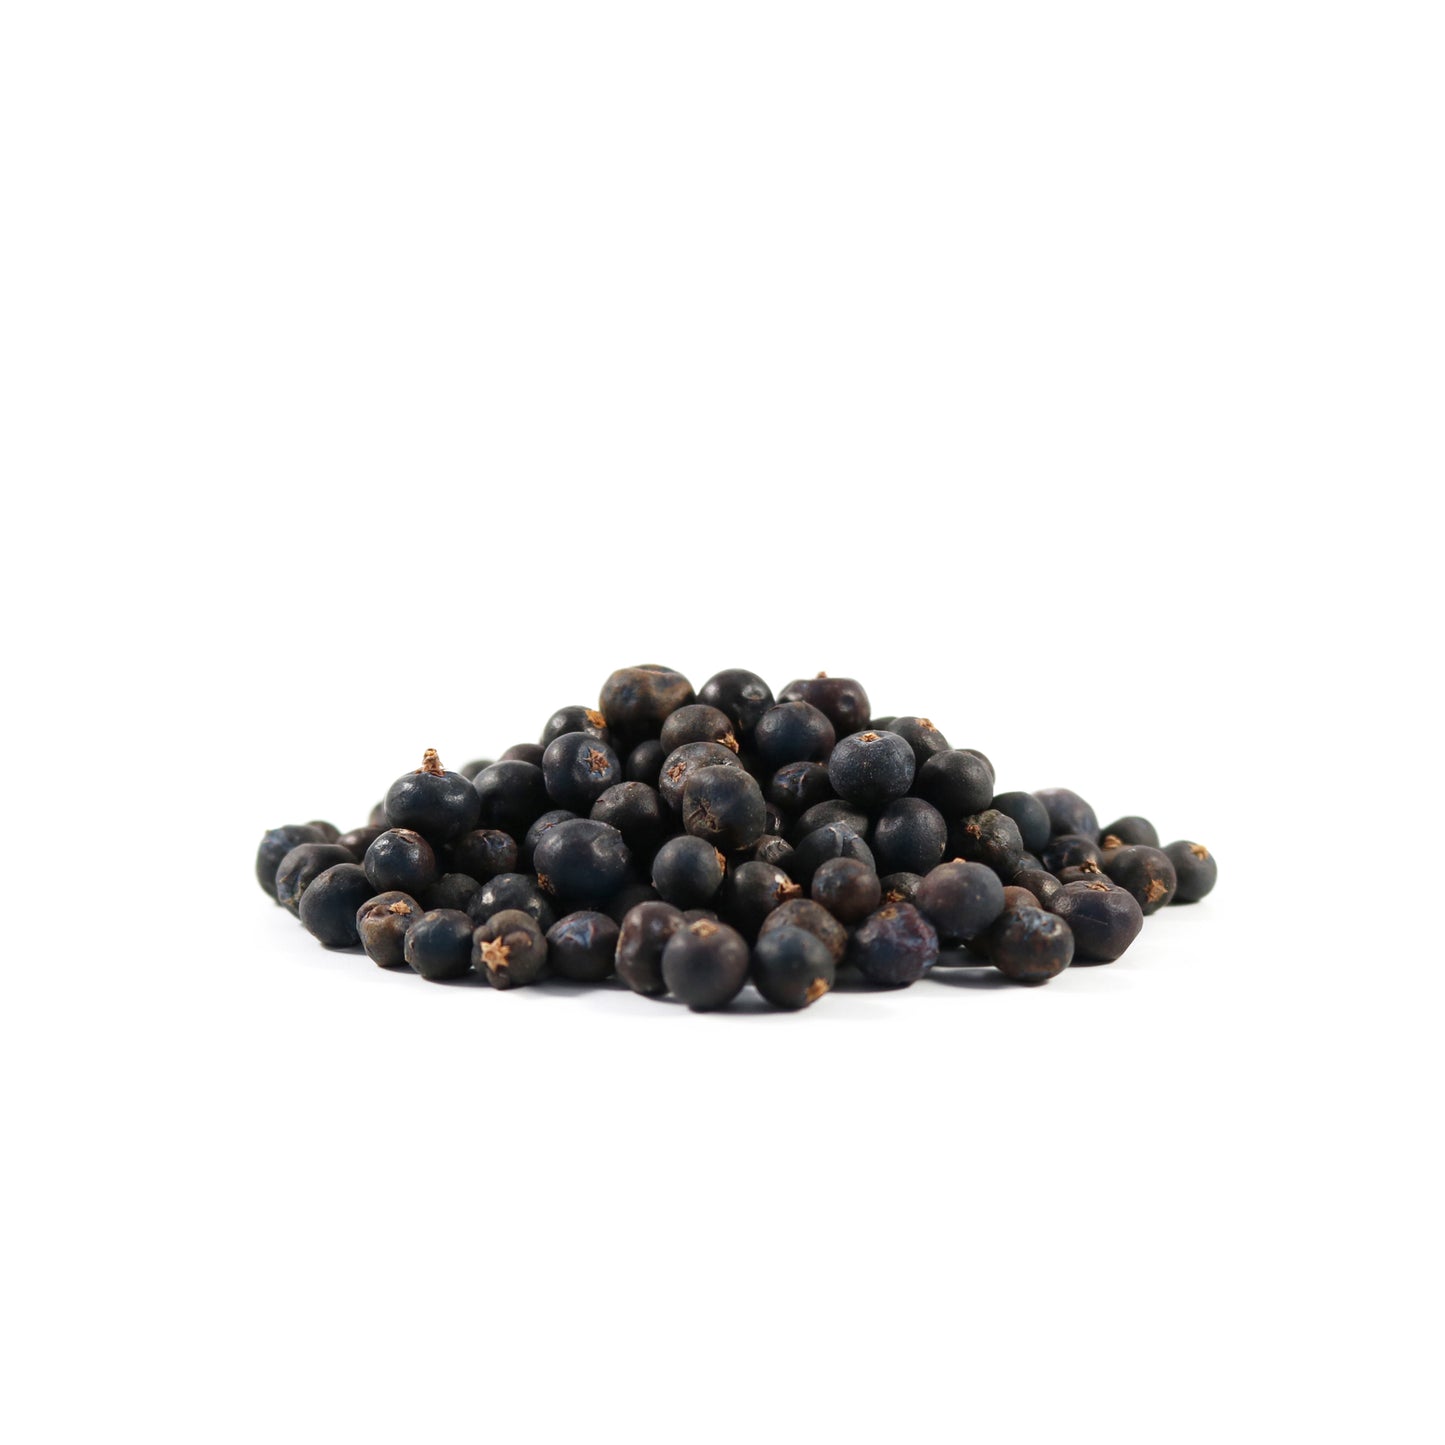 Botany - Juniper berries